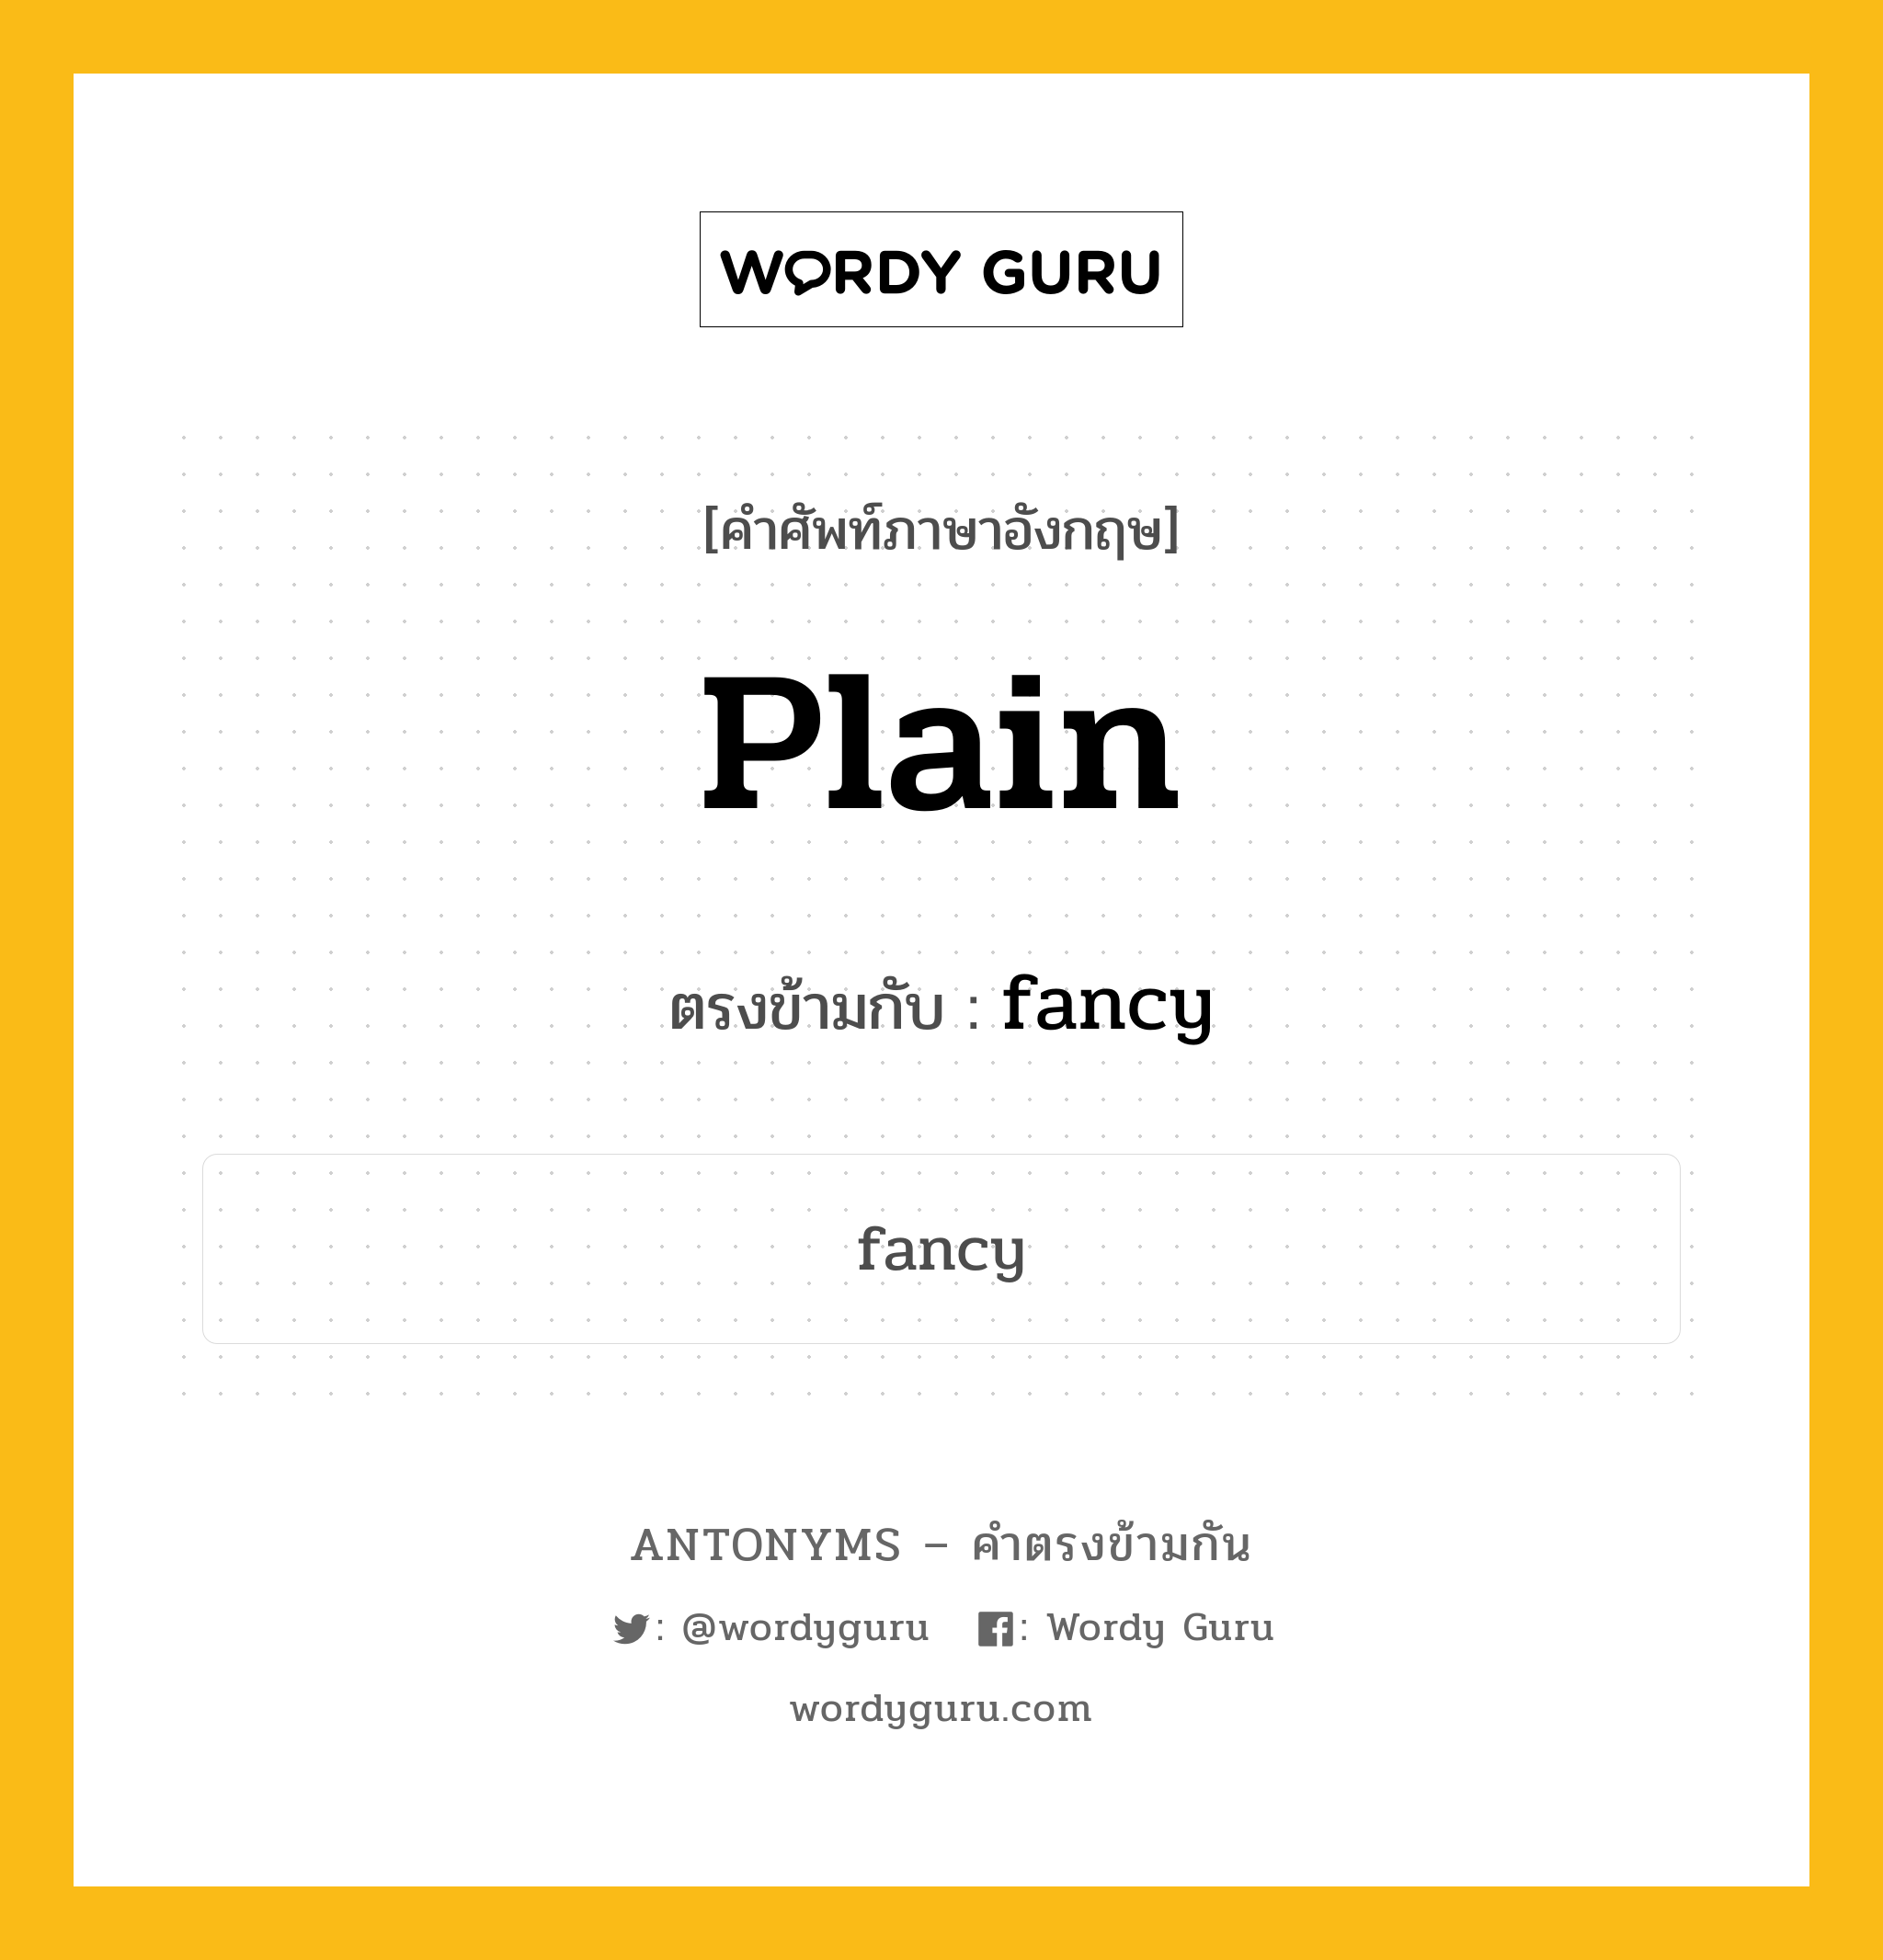 plain เป็นคำตรงข้ามกับคำไหนบ้าง?, คำศัพท์ภาษาอังกฤษ plain ตรงข้ามกับ fancy หมวด fancy